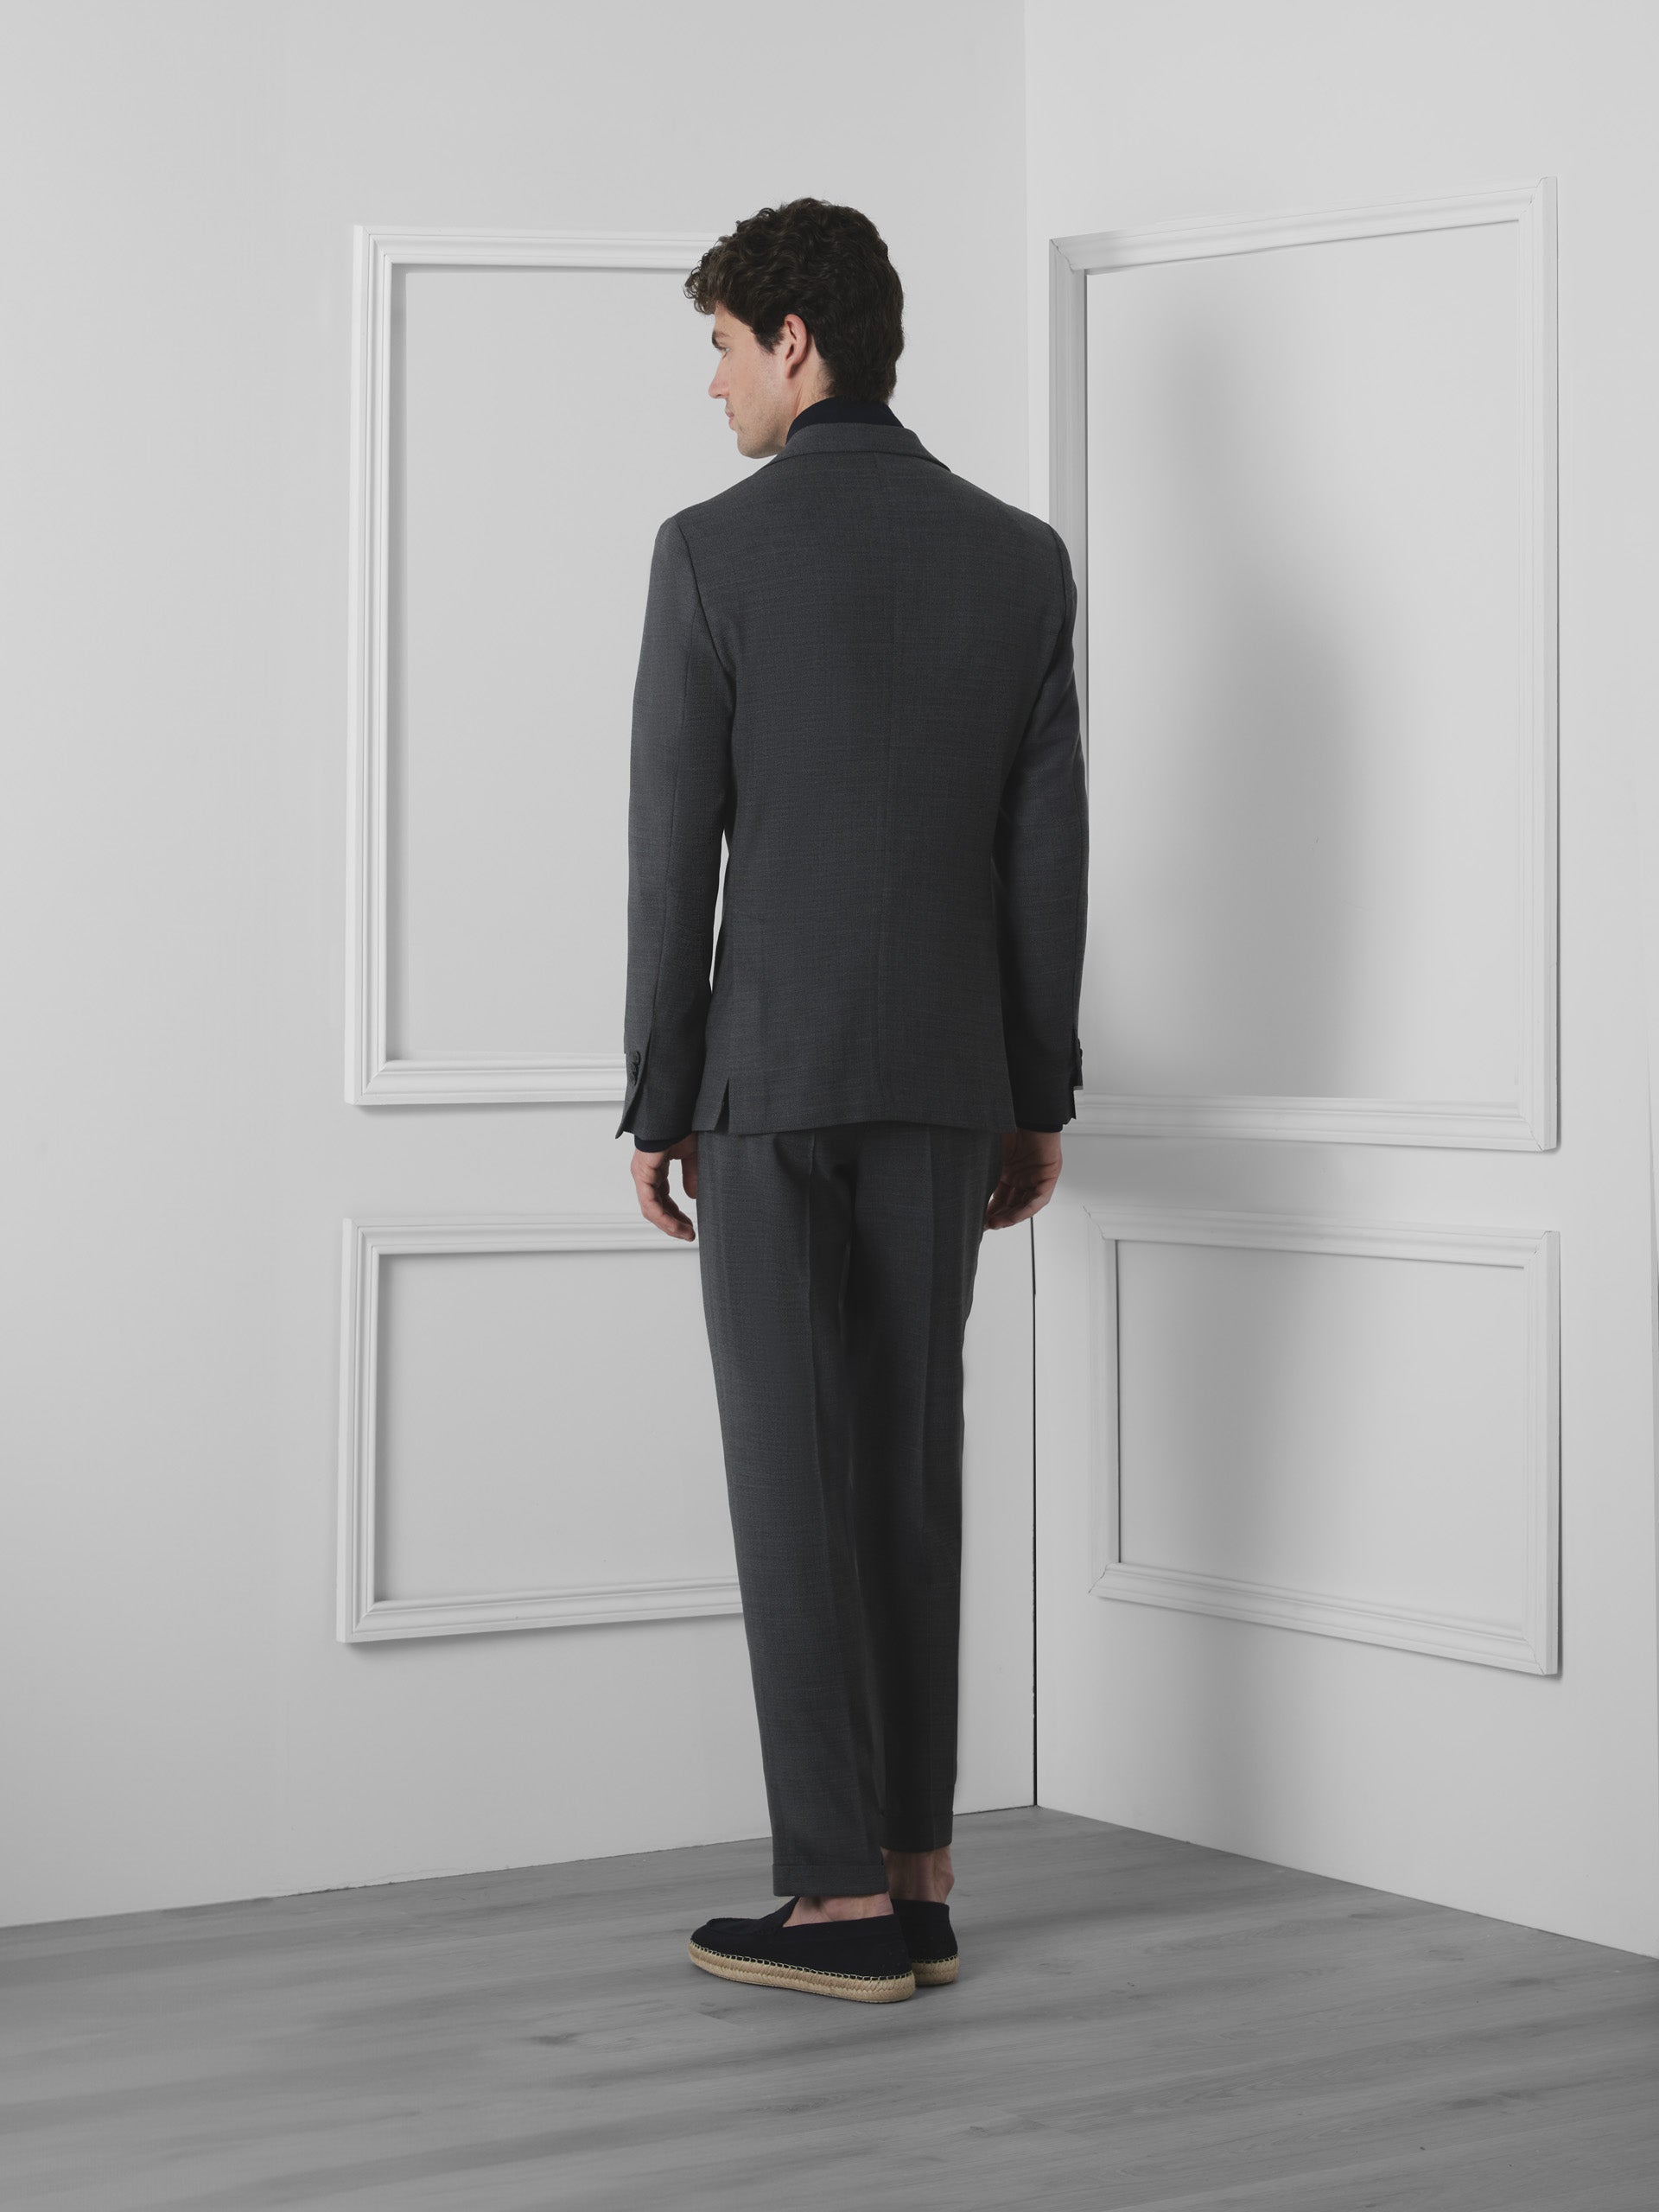 Silbon unique gray suit jacket